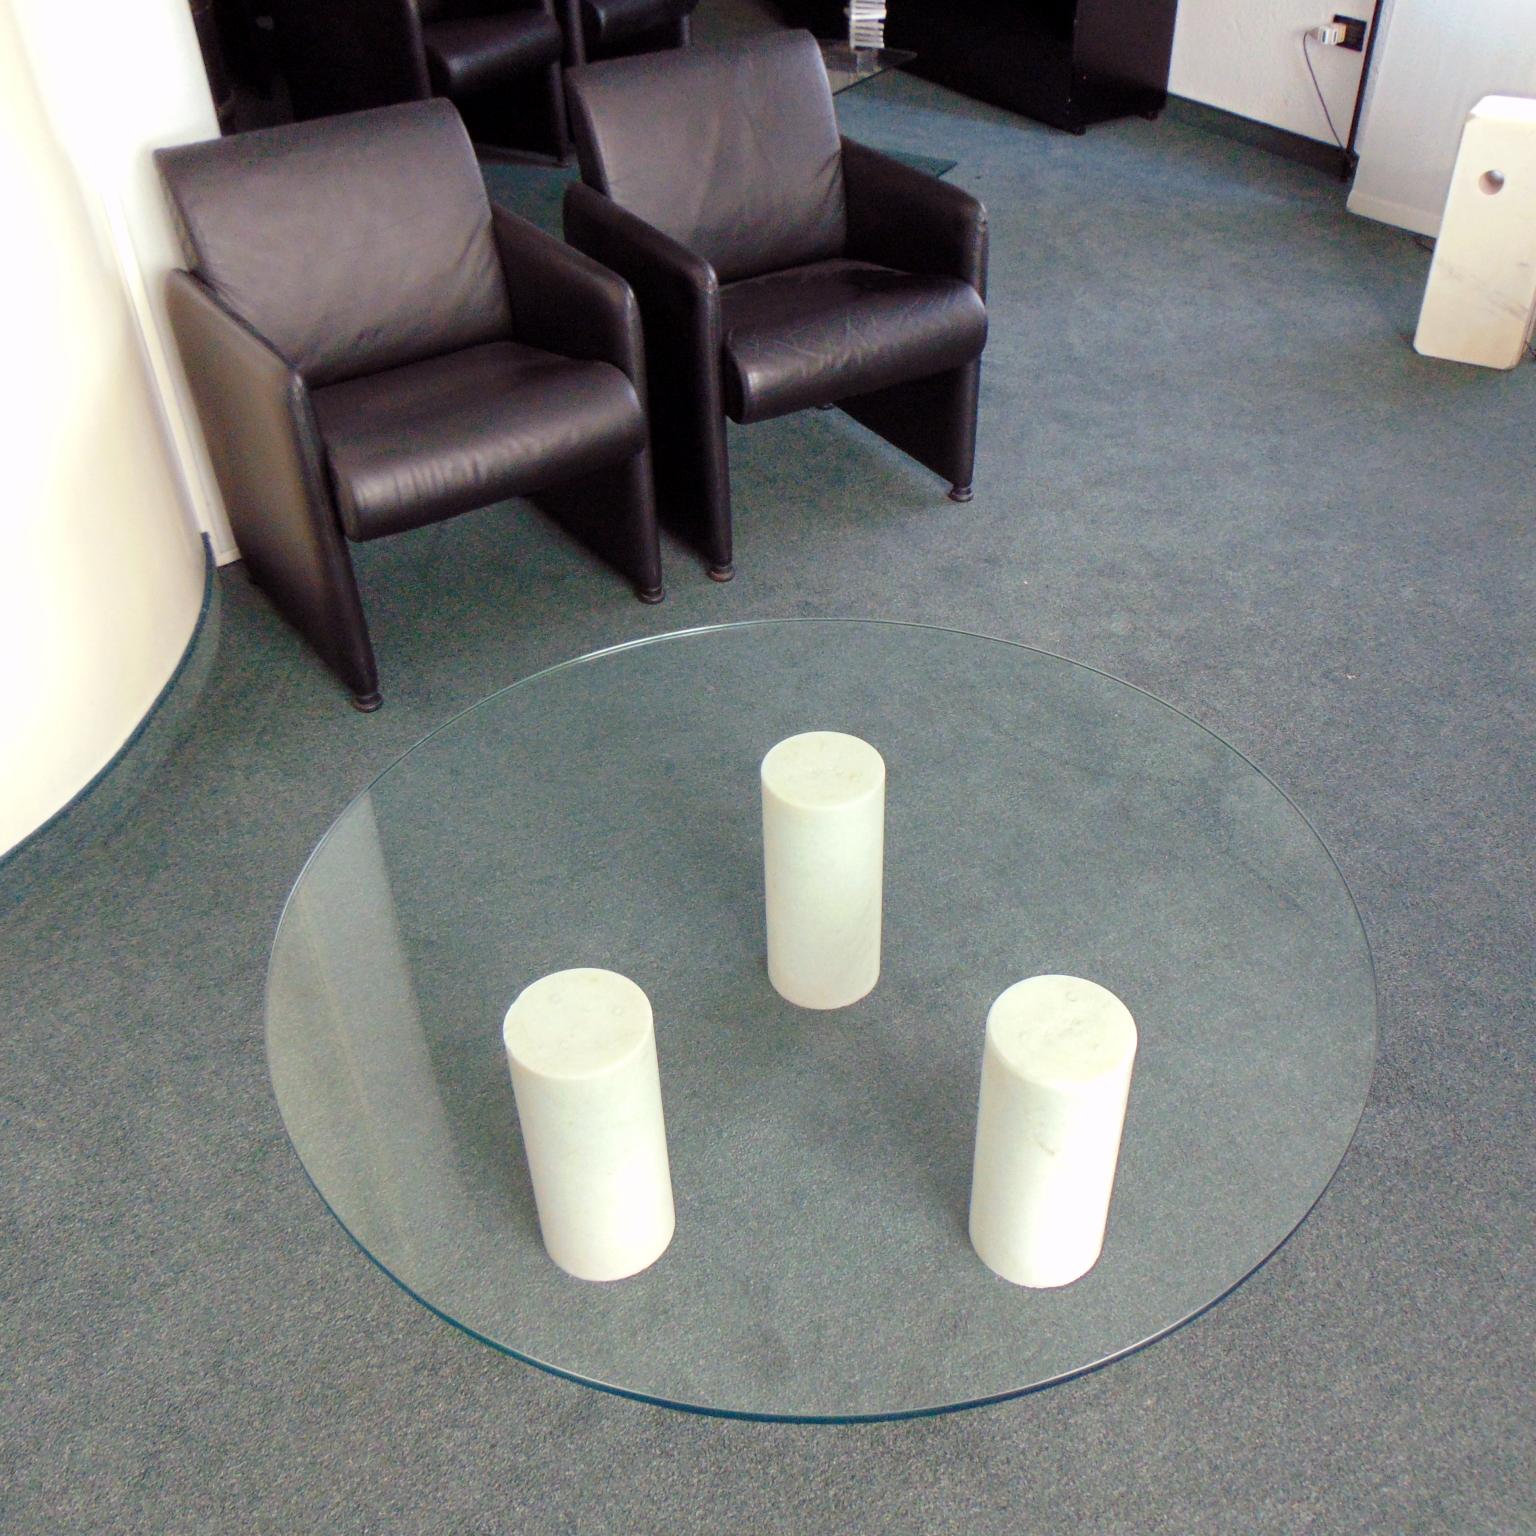 Dieser runde, niedrige Tisch hat drei skulpturale, zylindrische Beine aus einem seltenen, weißen Marmor aus Brescia, Italien. Es handelt sich um einen sehr weißen Marmor mit Kristalleinschlüssen. Die Beine sind poliert und im oberen Teil sehr leicht